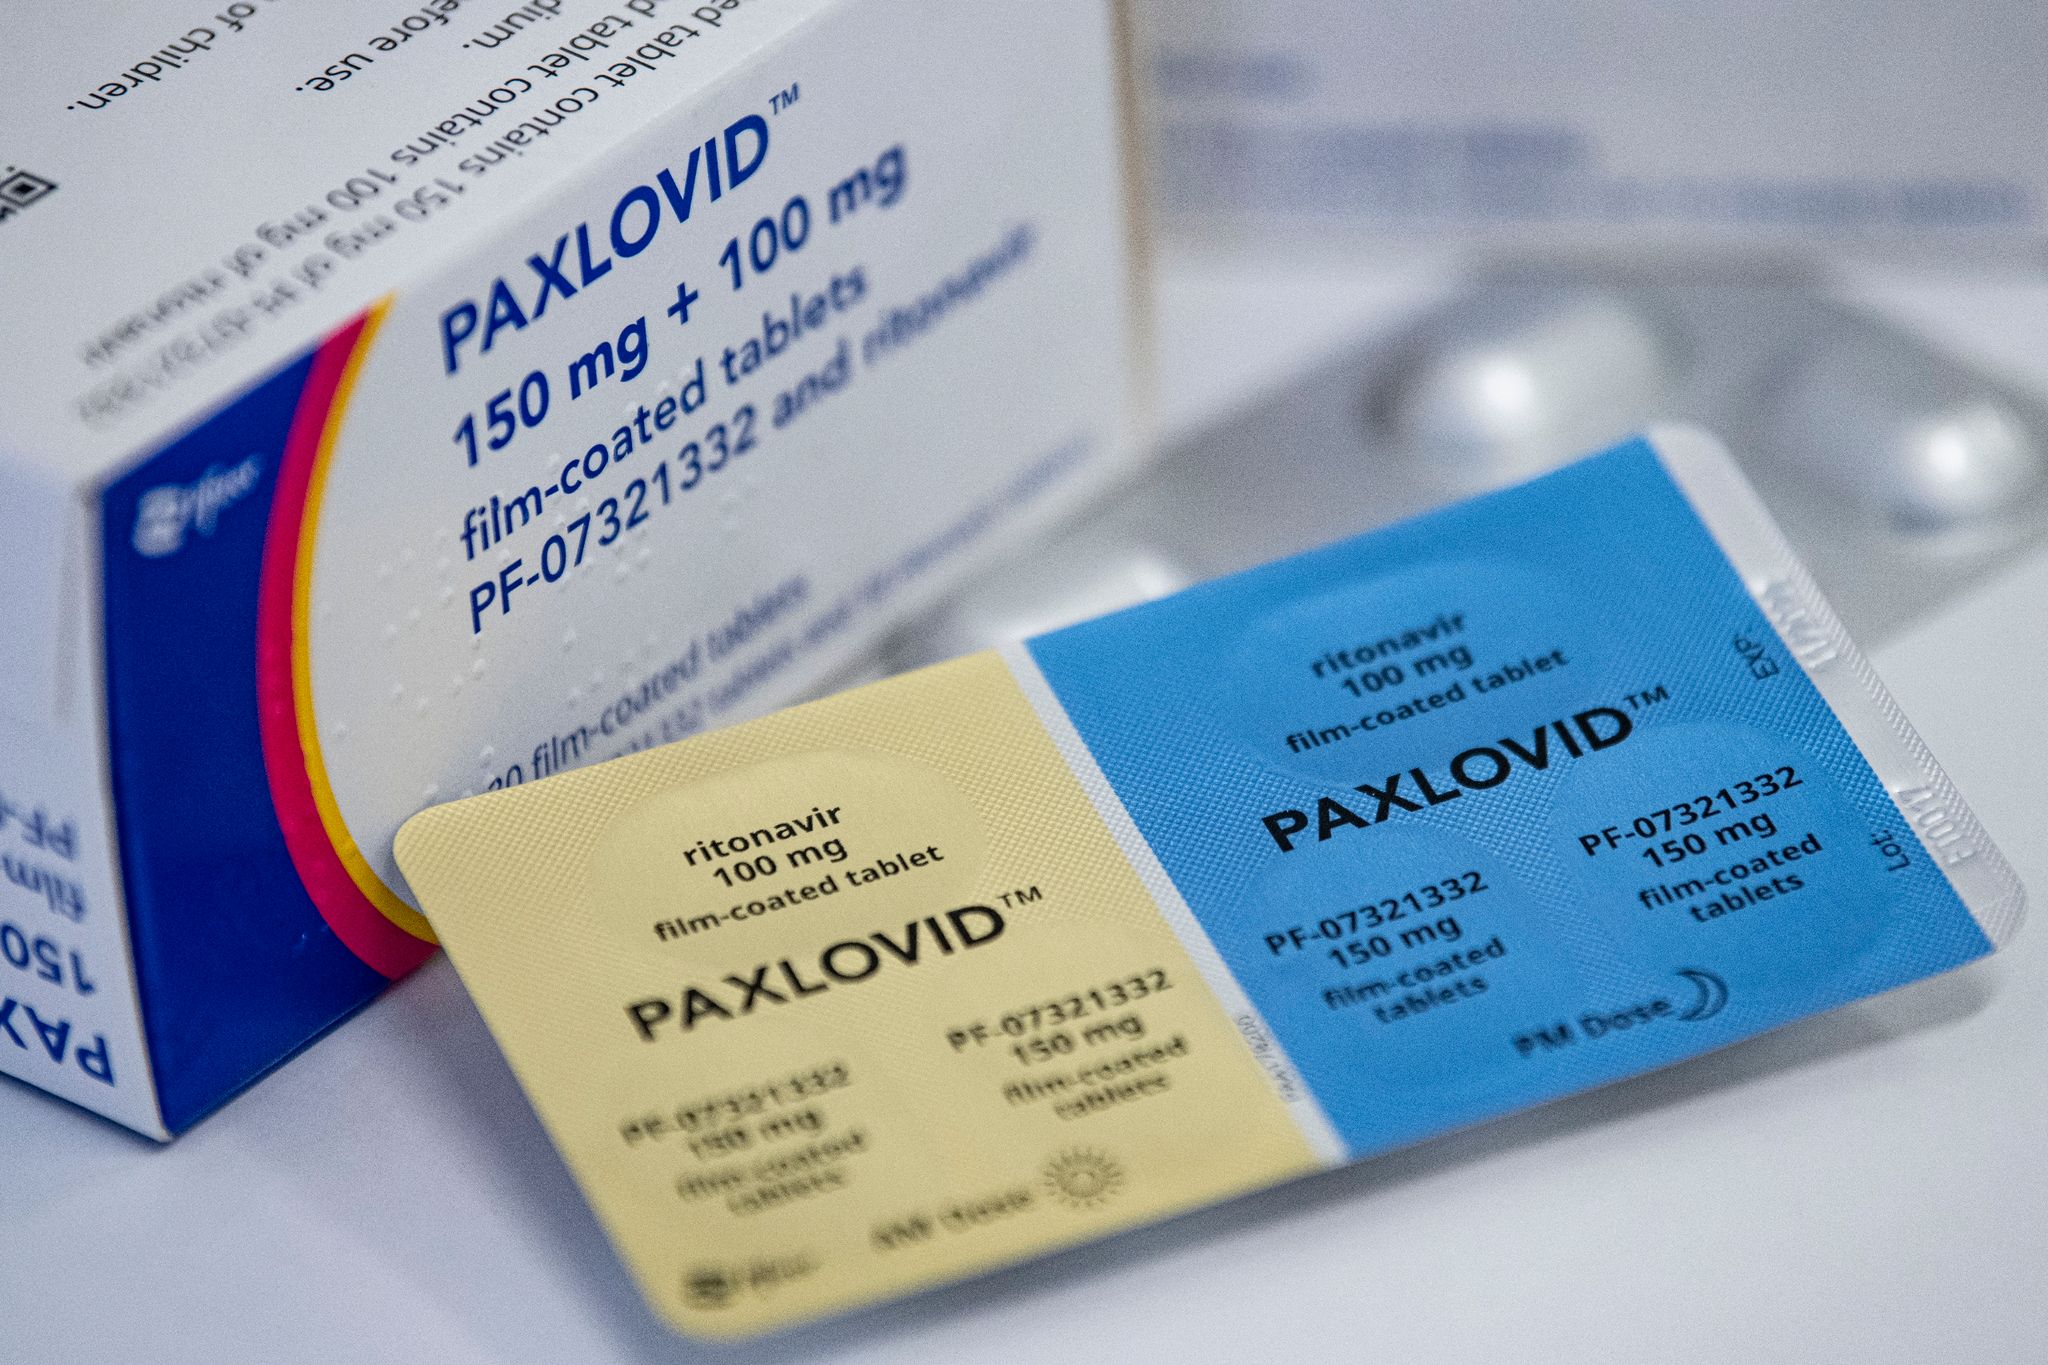 Paxlovid hat in Studien eine hohe Wirksamkeit gegen schwere Covid-19-Verläufe gezeigt. Als Gamechanger der Pandemie wird es dennoch nicht gesehen.